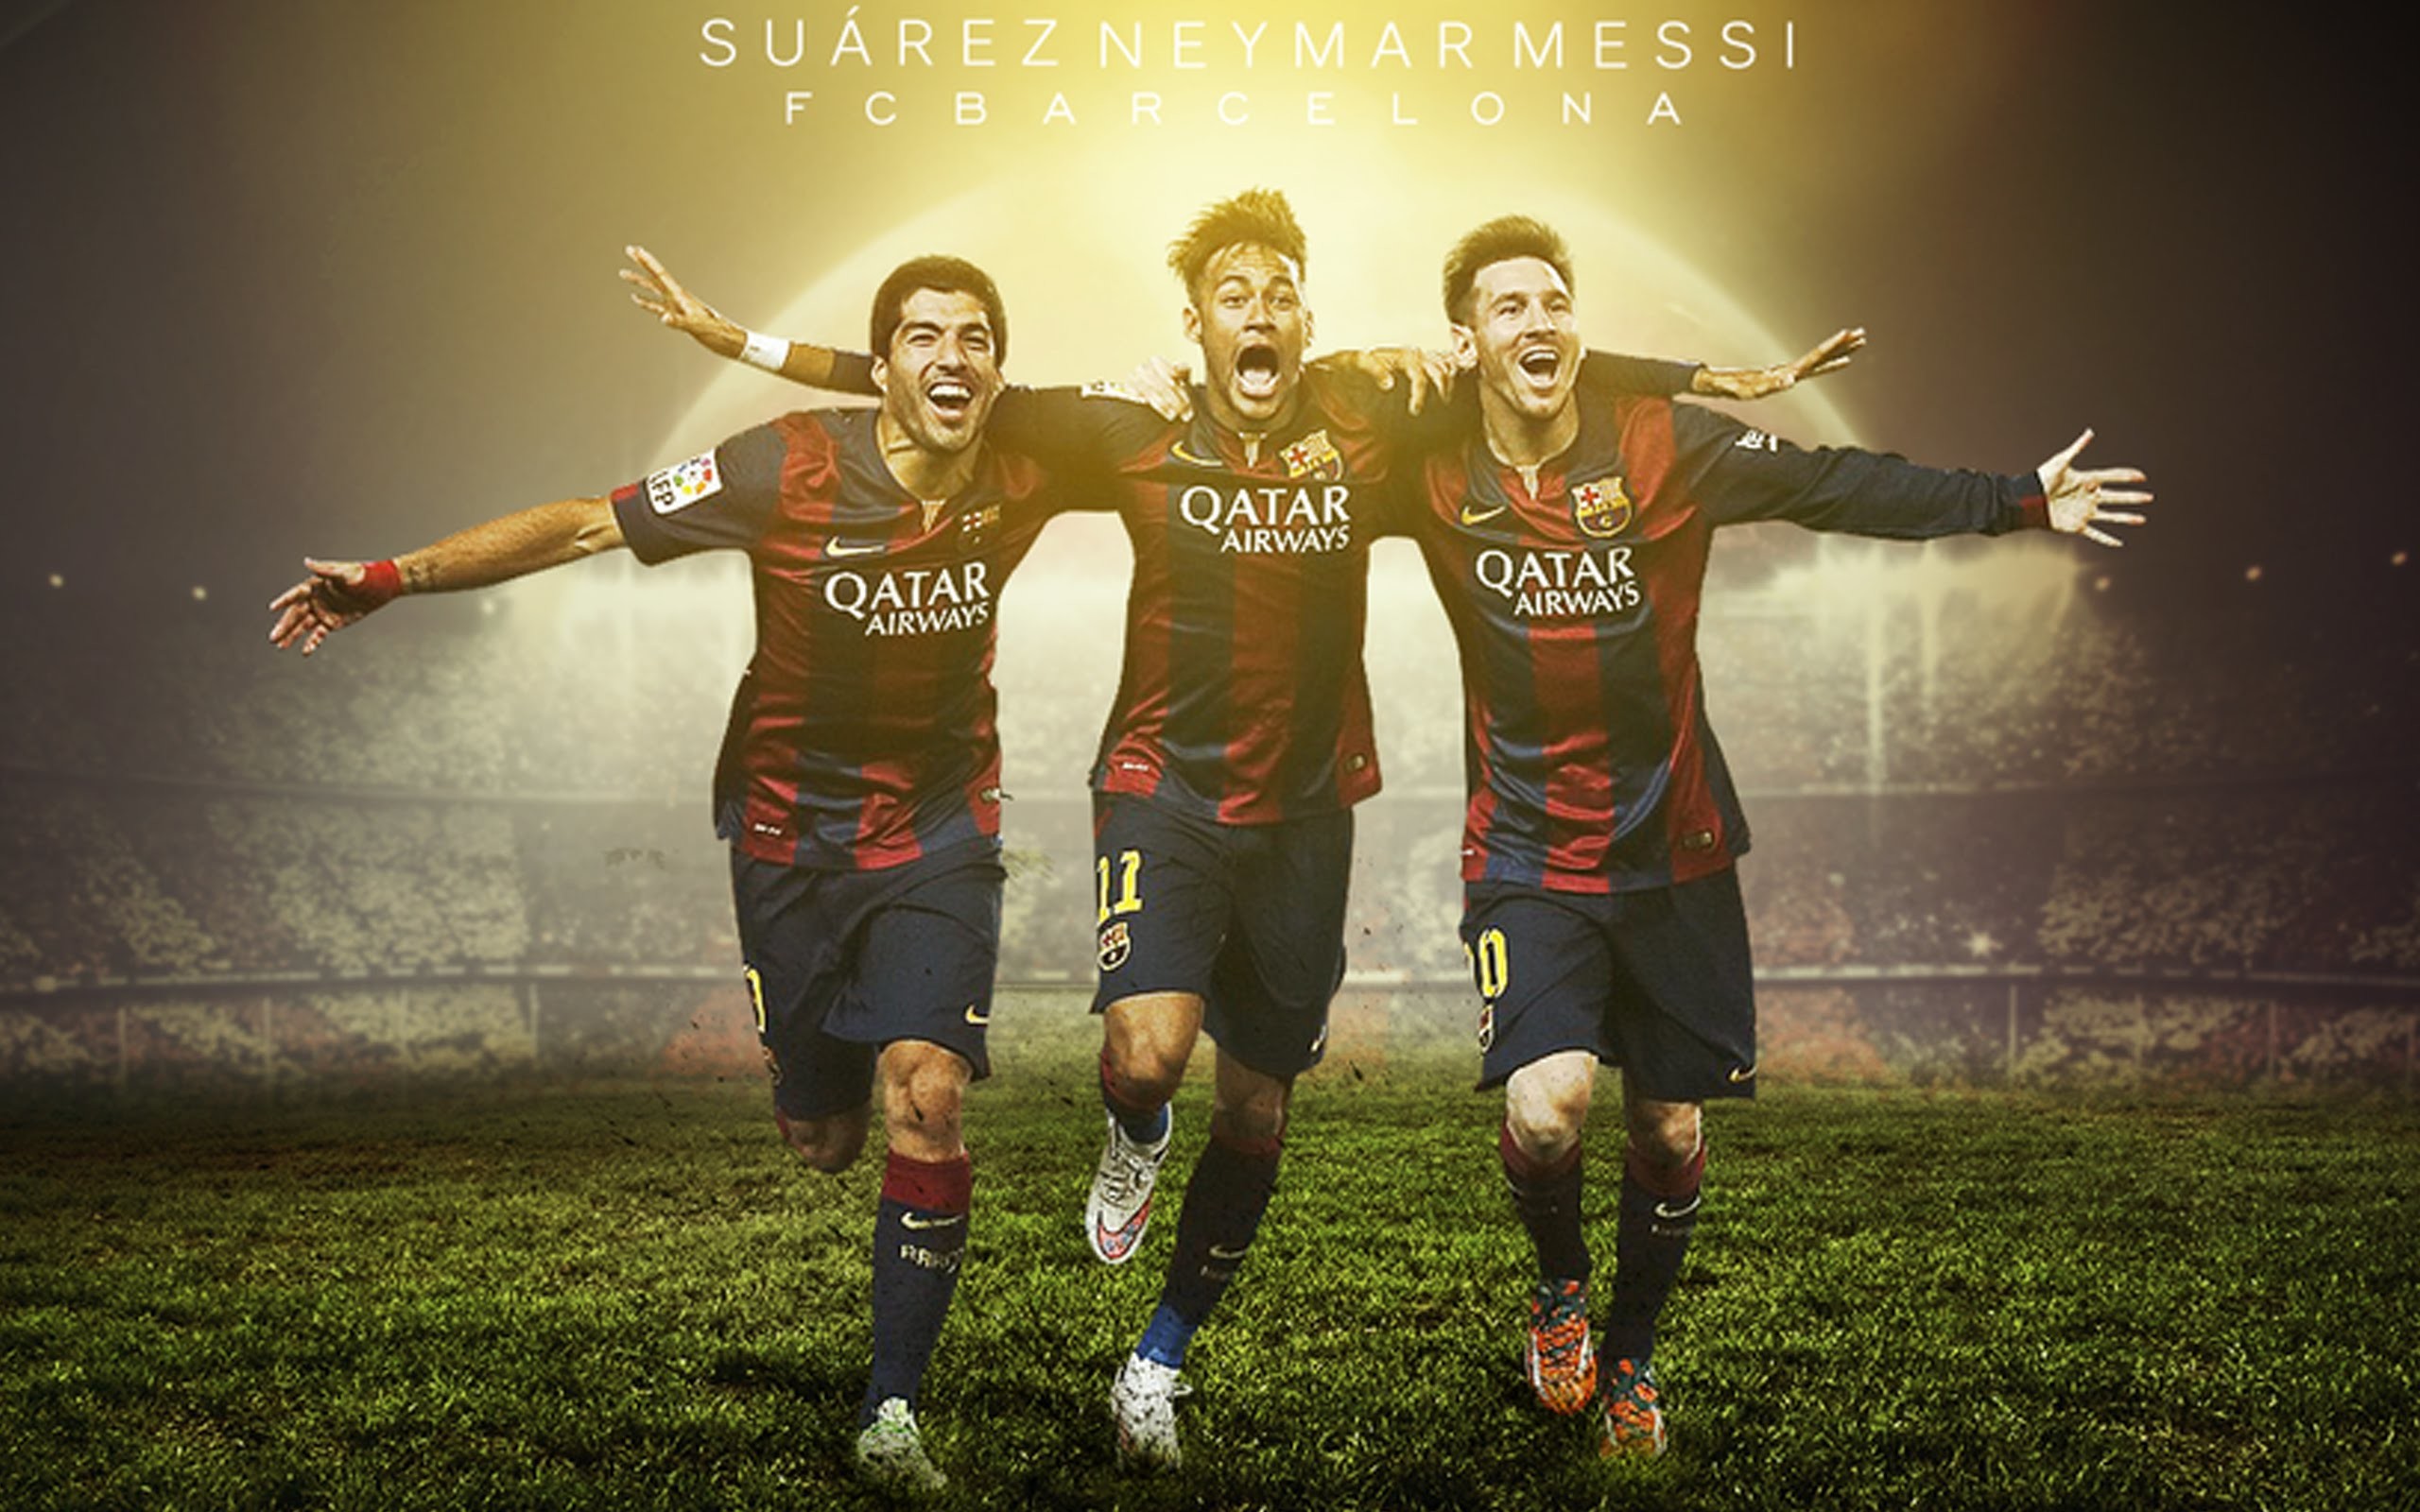 messi neymar suarez wallpaper hd,football player,women's football,team,soccer player,soccer